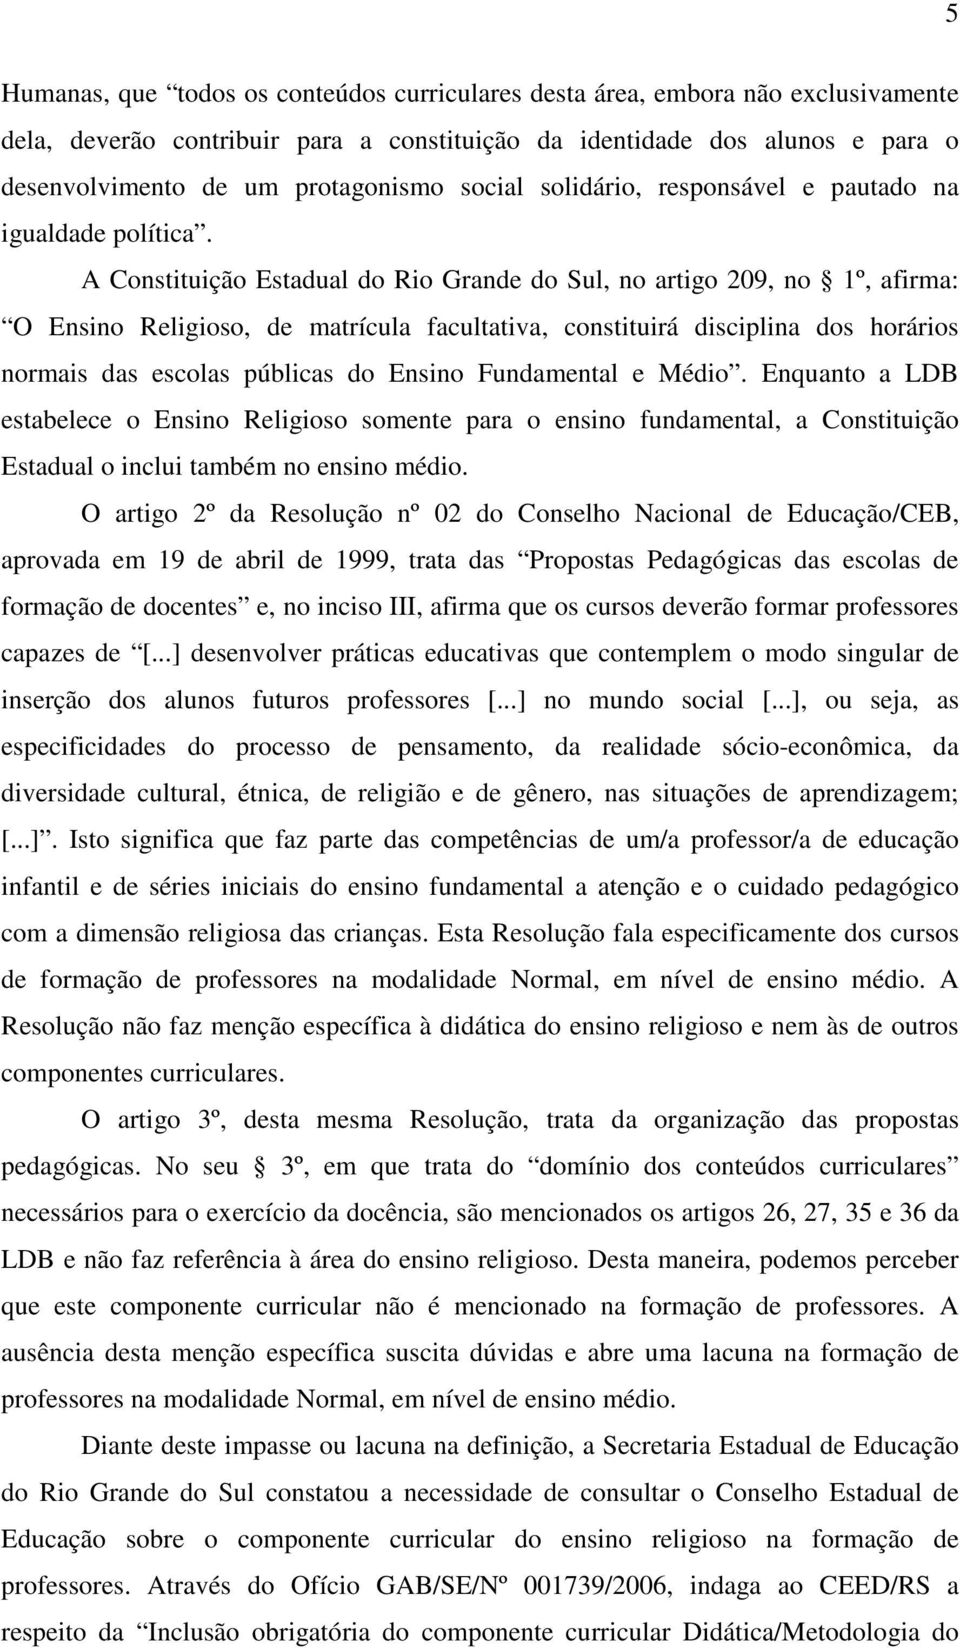 A Constituição Estadual do Rio Grande do Sul, no artigo 209, no 1º, afirma: O Ensino Religioso, de matrícula facultativa, constituirá disciplina dos horários normais das escolas públicas do Ensino